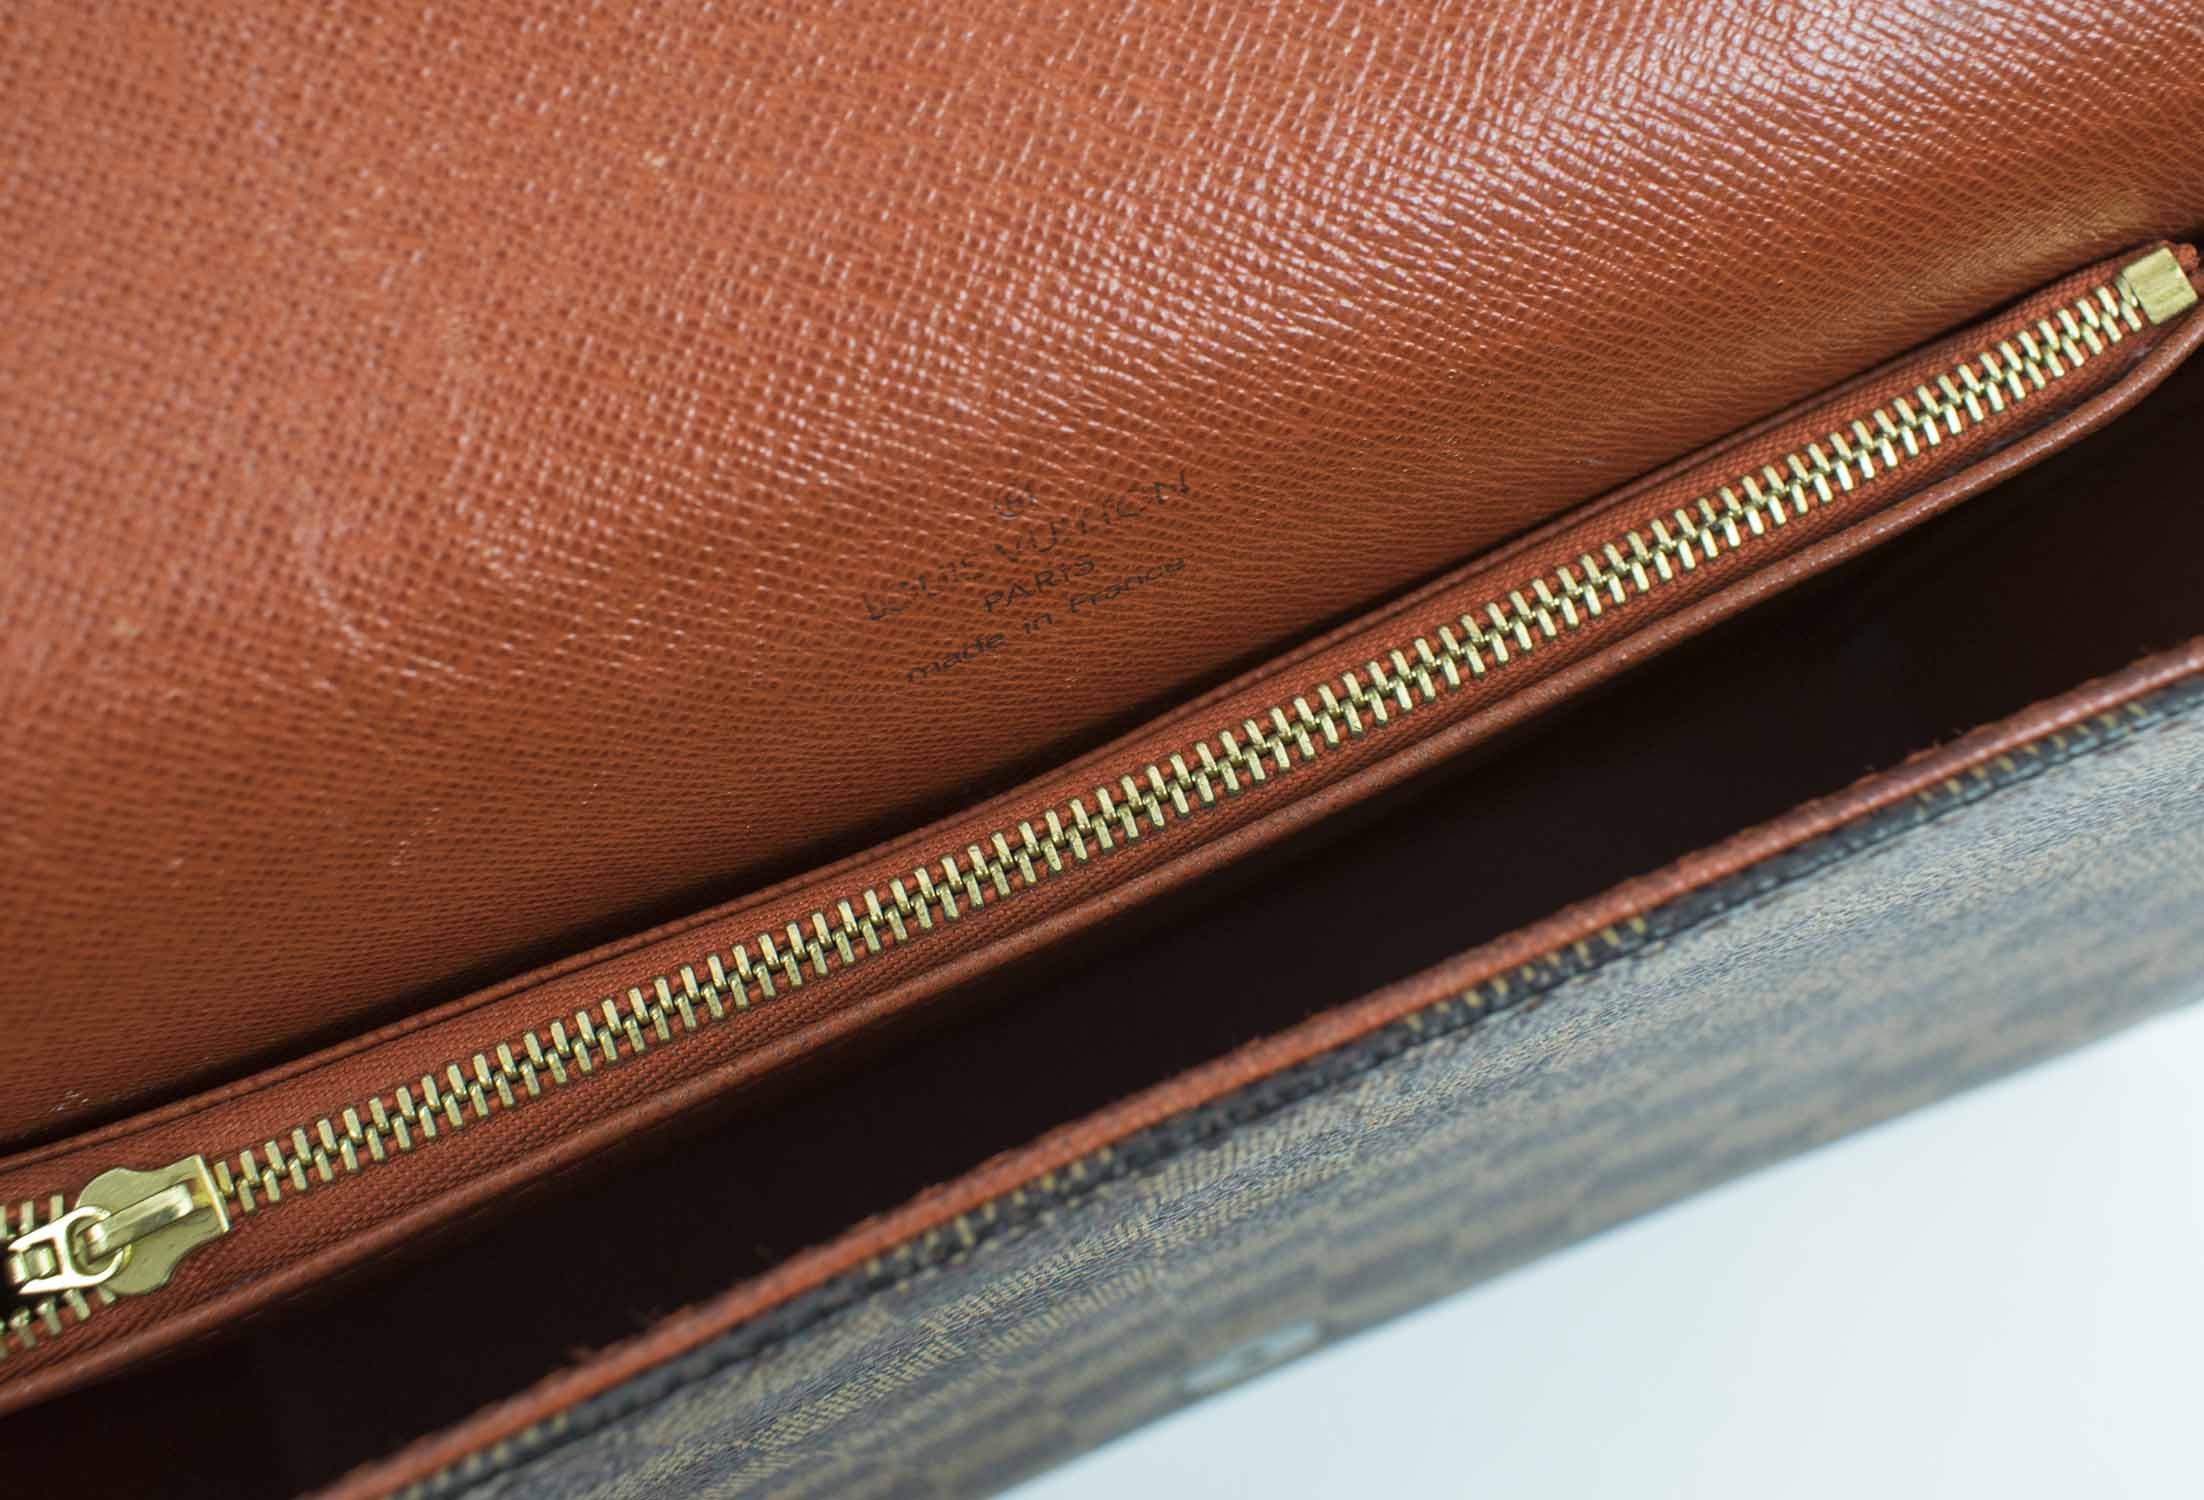 💯AUTHENTIC Louis Vuitton Damier Ebene Tribeca Carre Flap Bag